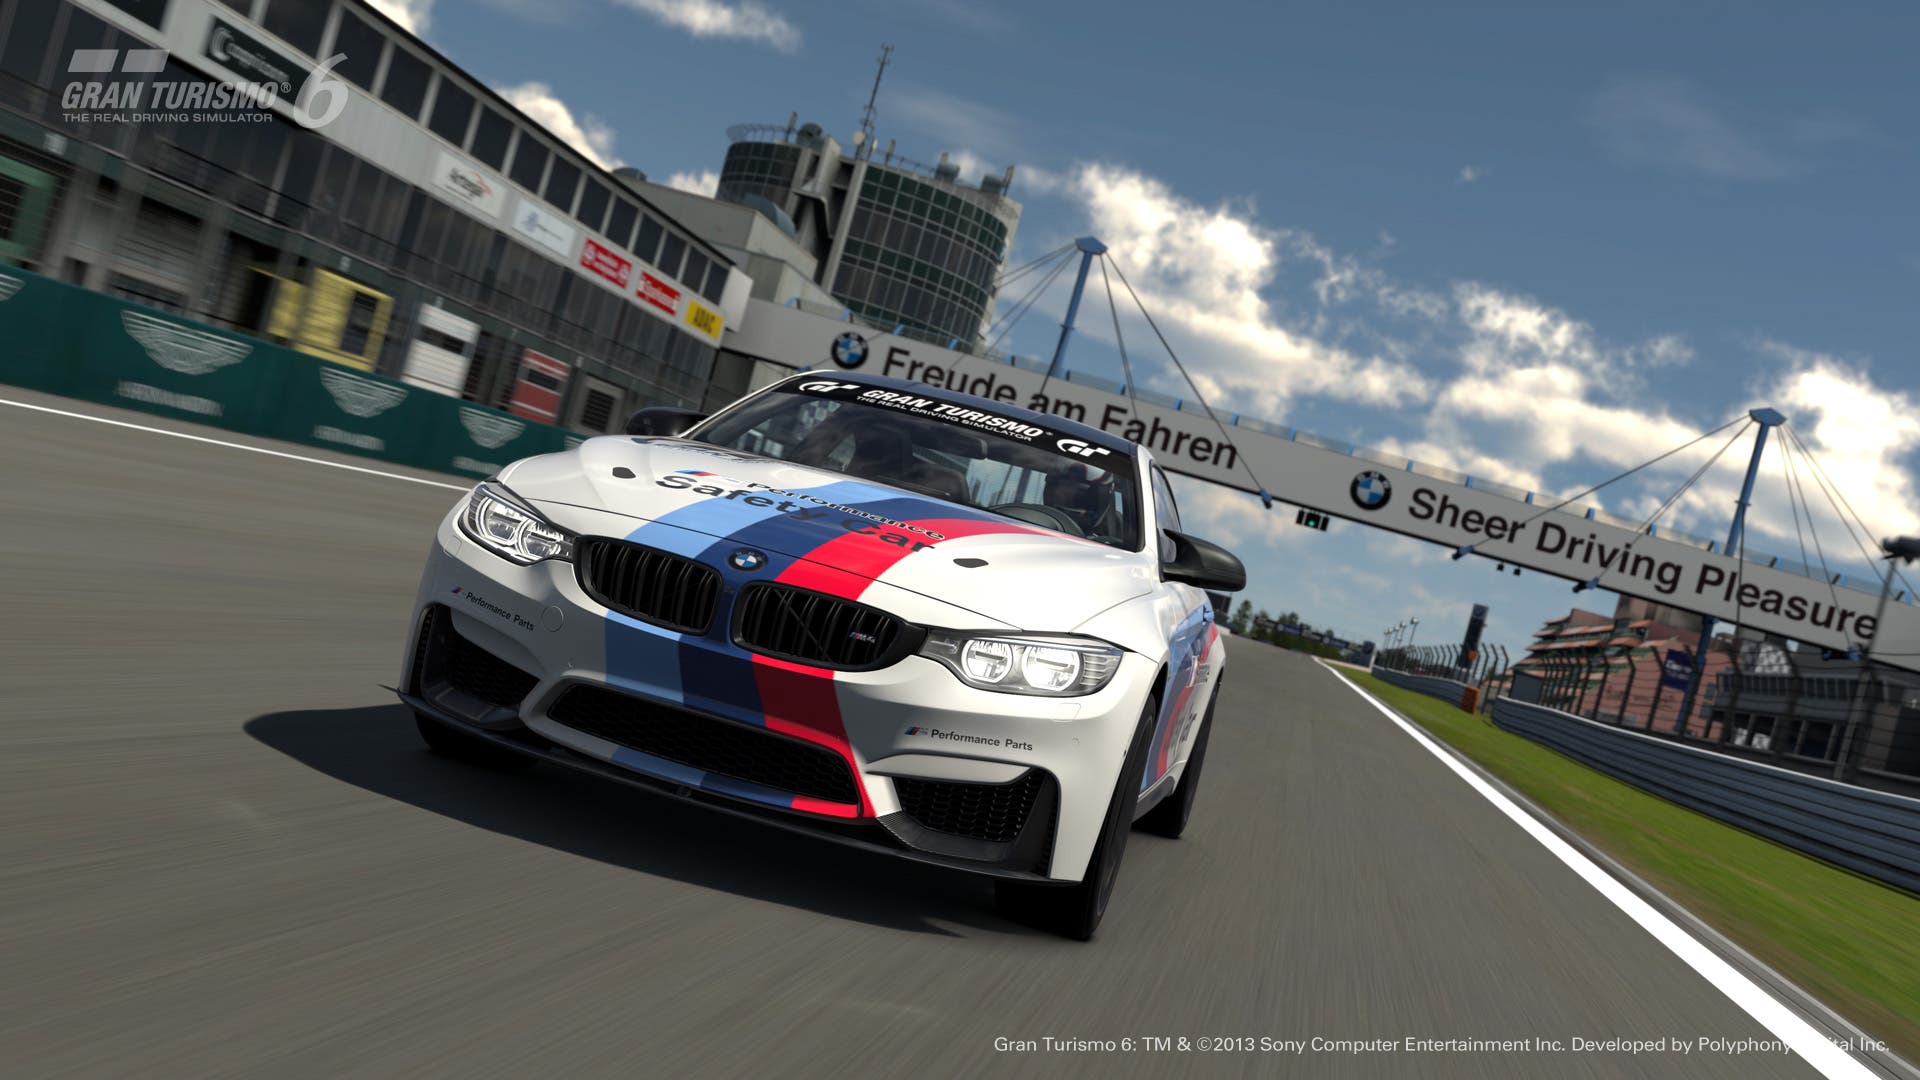 Imagen de Gran Turismo 6 cerrará sus servidores a finales de marzo